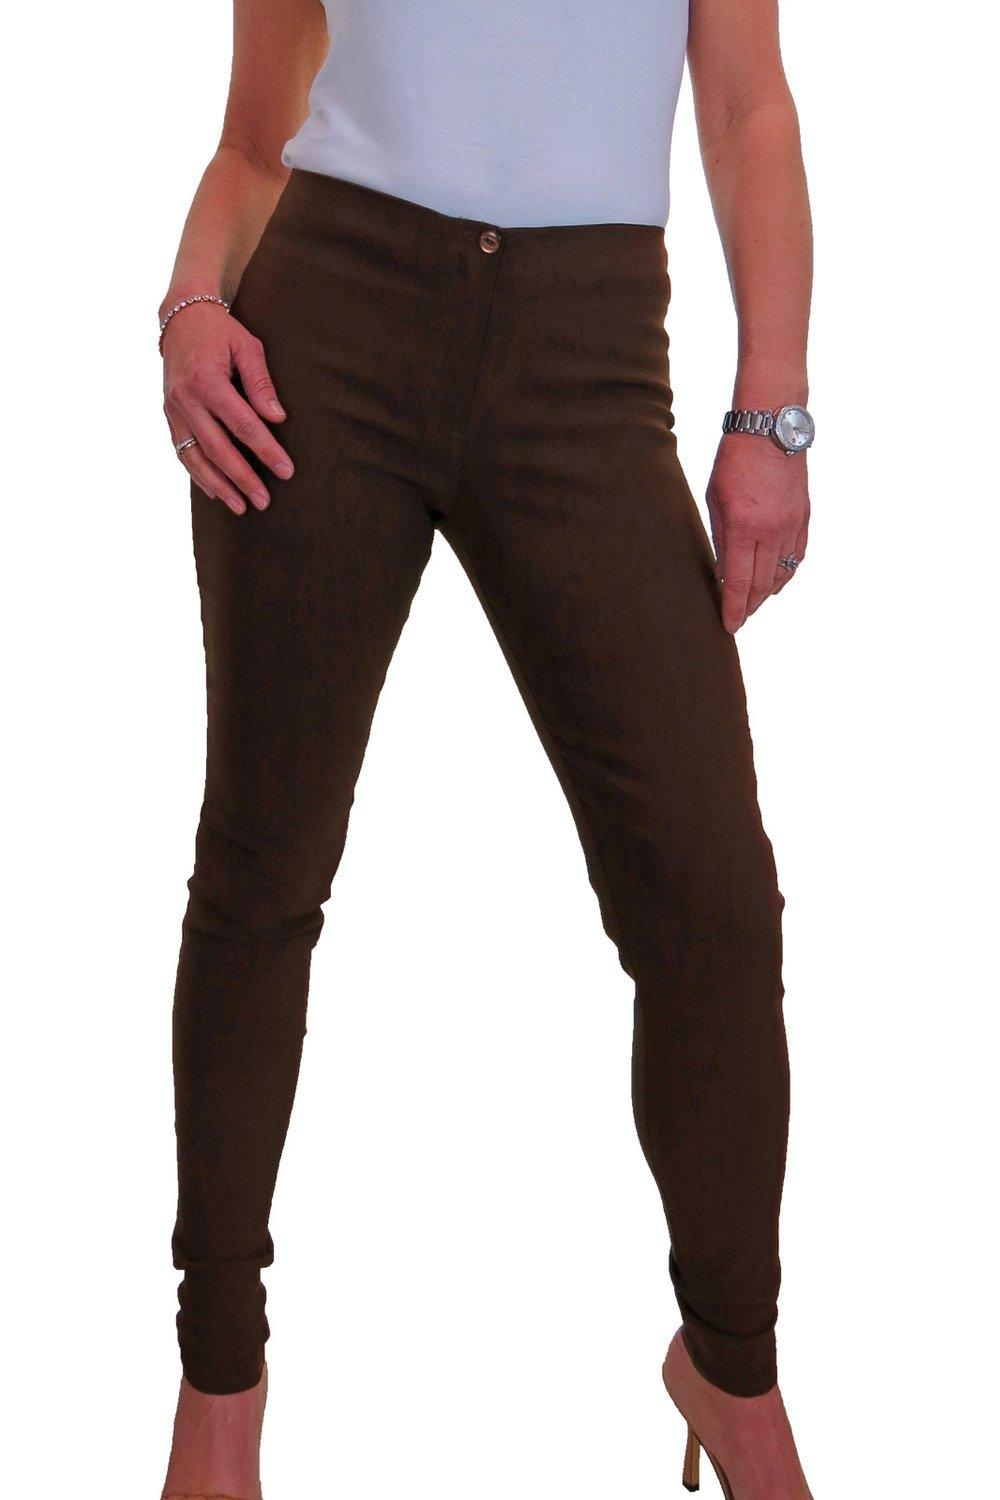 Умные узкие эластичные брюки Paulo Due, коричневый женские эластичные брюки для конного спорта однотонные брюки с карманами для подтяжки бедер 50%